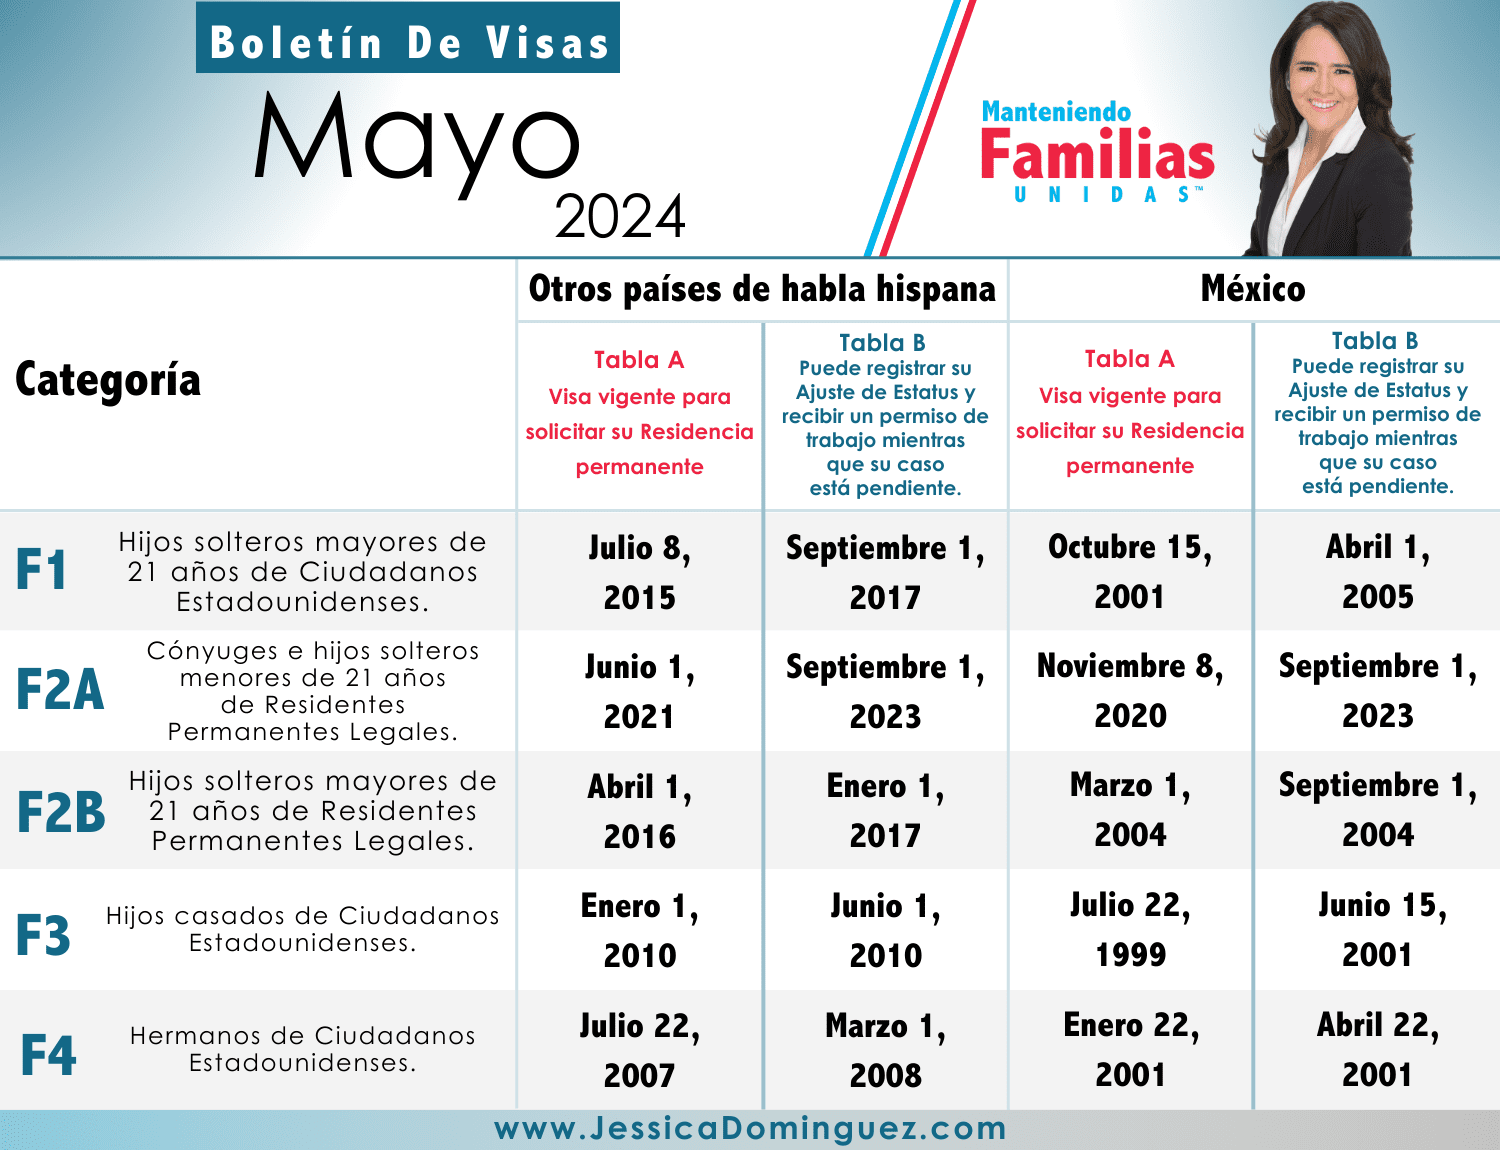 Boletín de Visas Mayo 2024